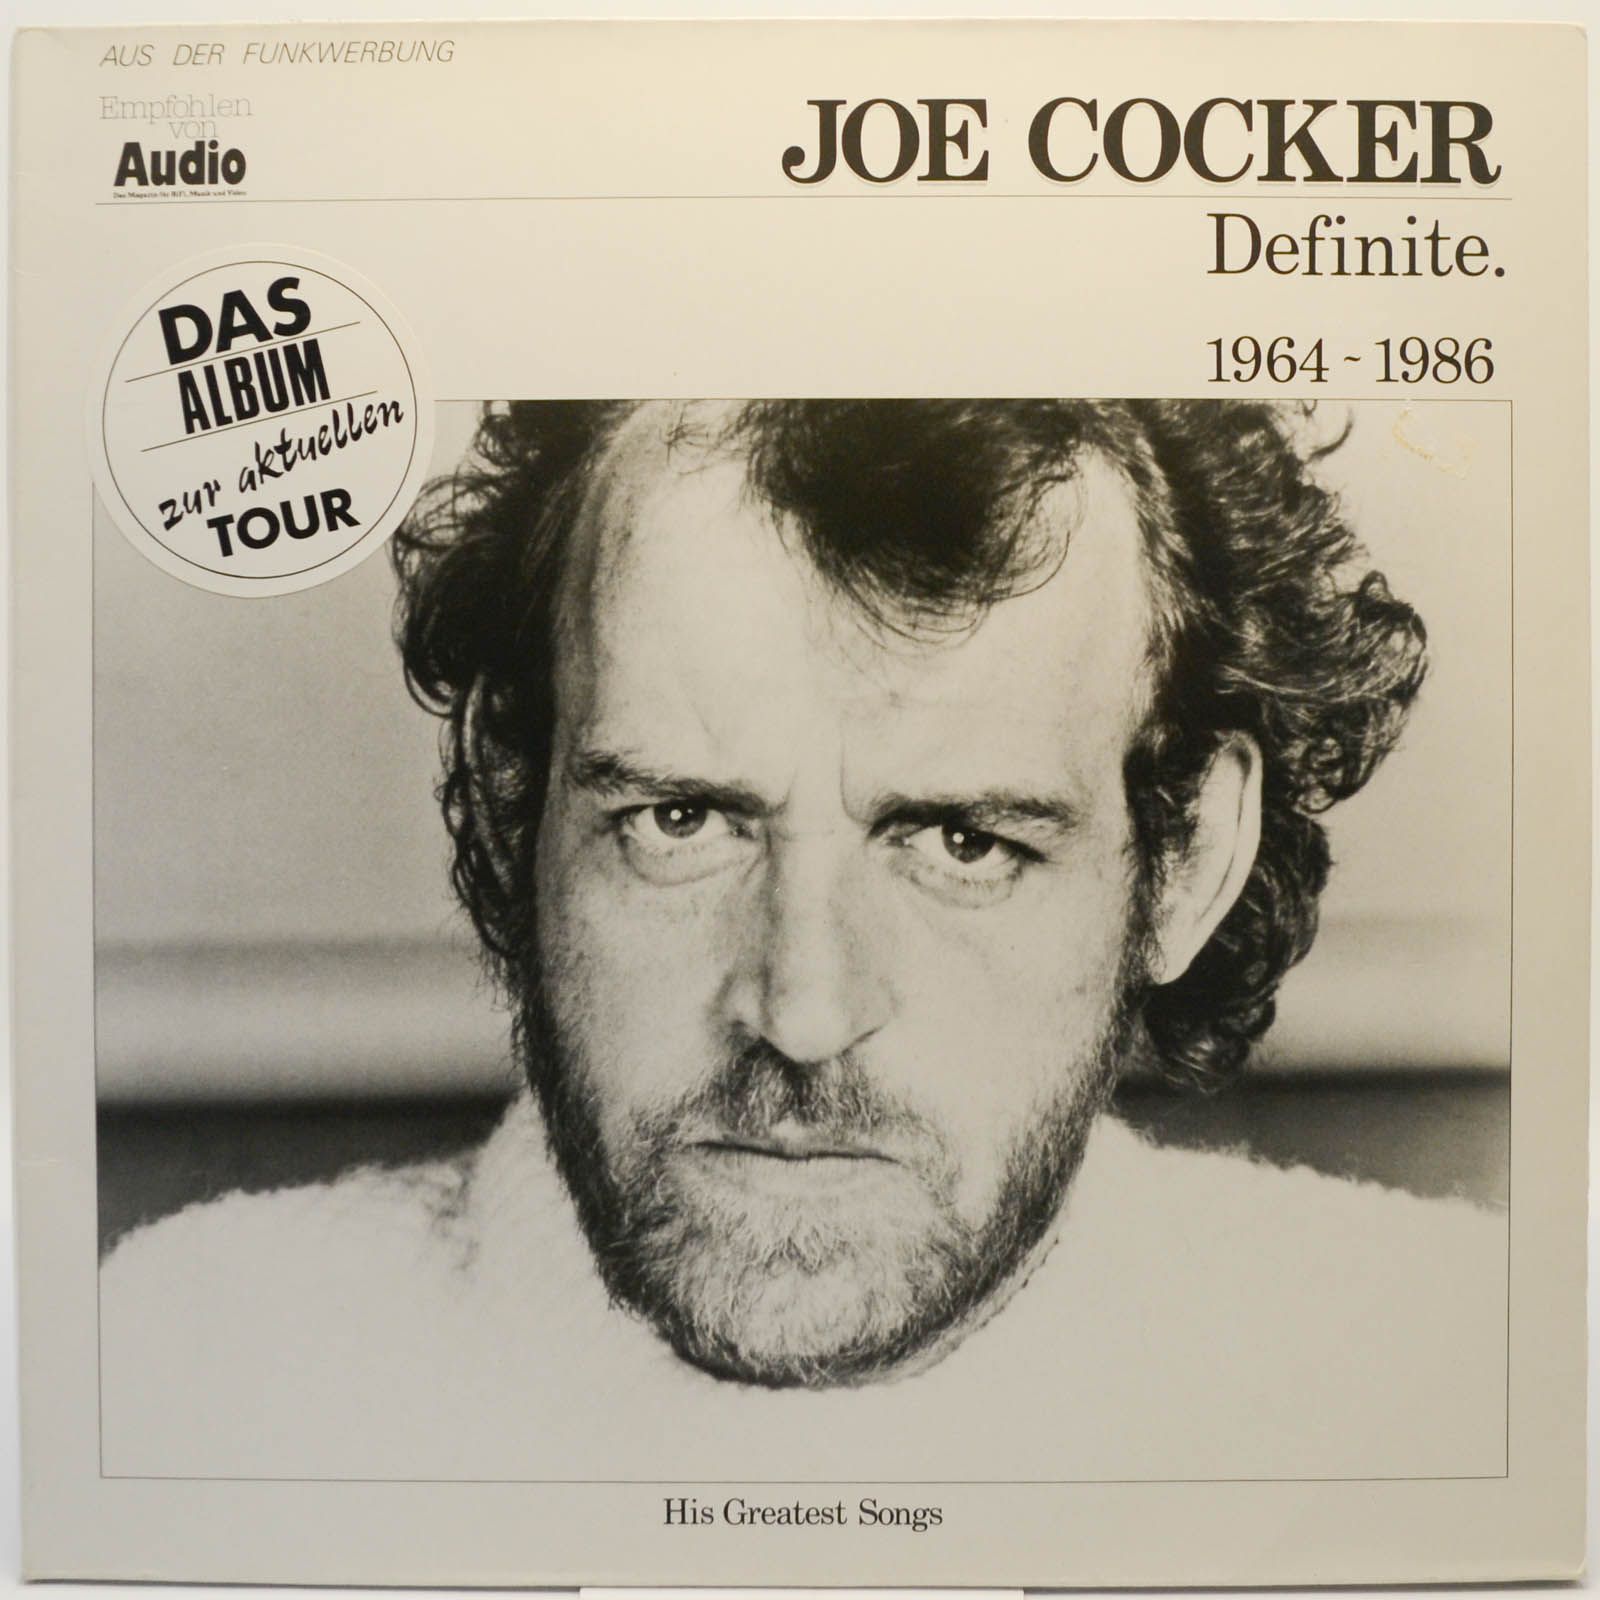 Joe Cocker — Definite 1964-1986, 1987